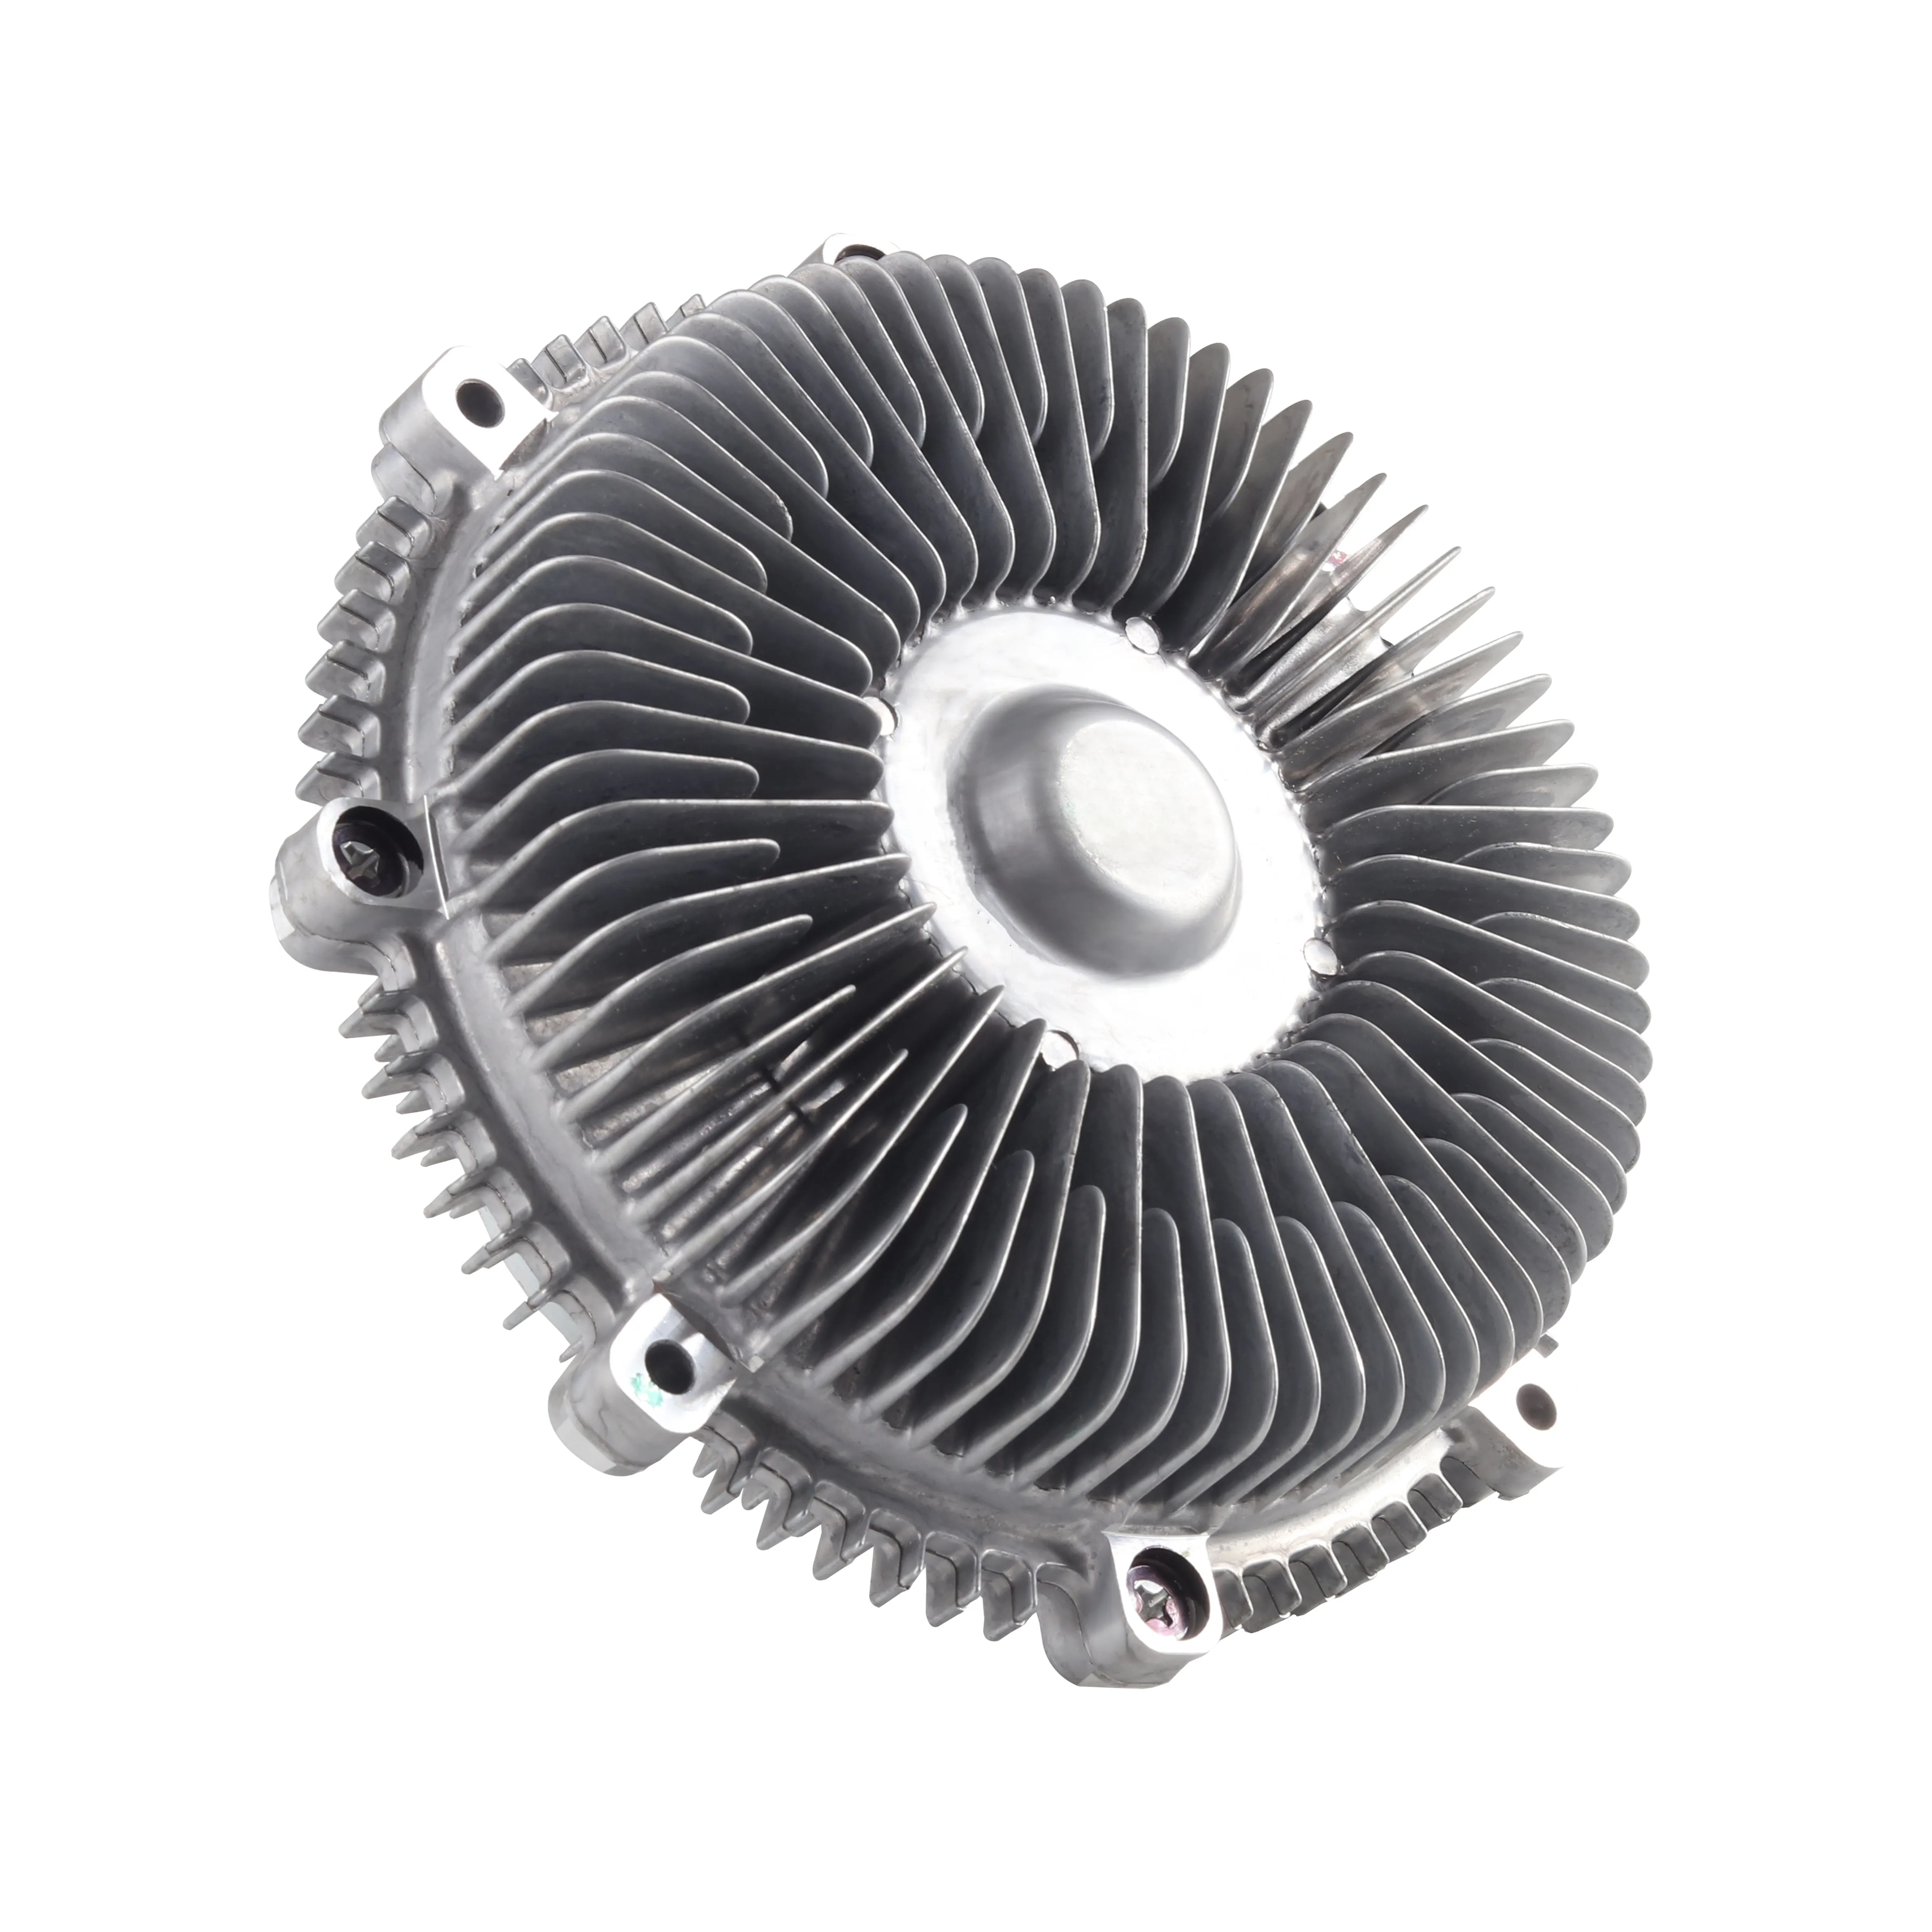 3330 New Engine Cooling Fan Clutch Fits 2007-2017 Infiniti QX80 Nissan Titan XD 210825X20A 21082-5X20A